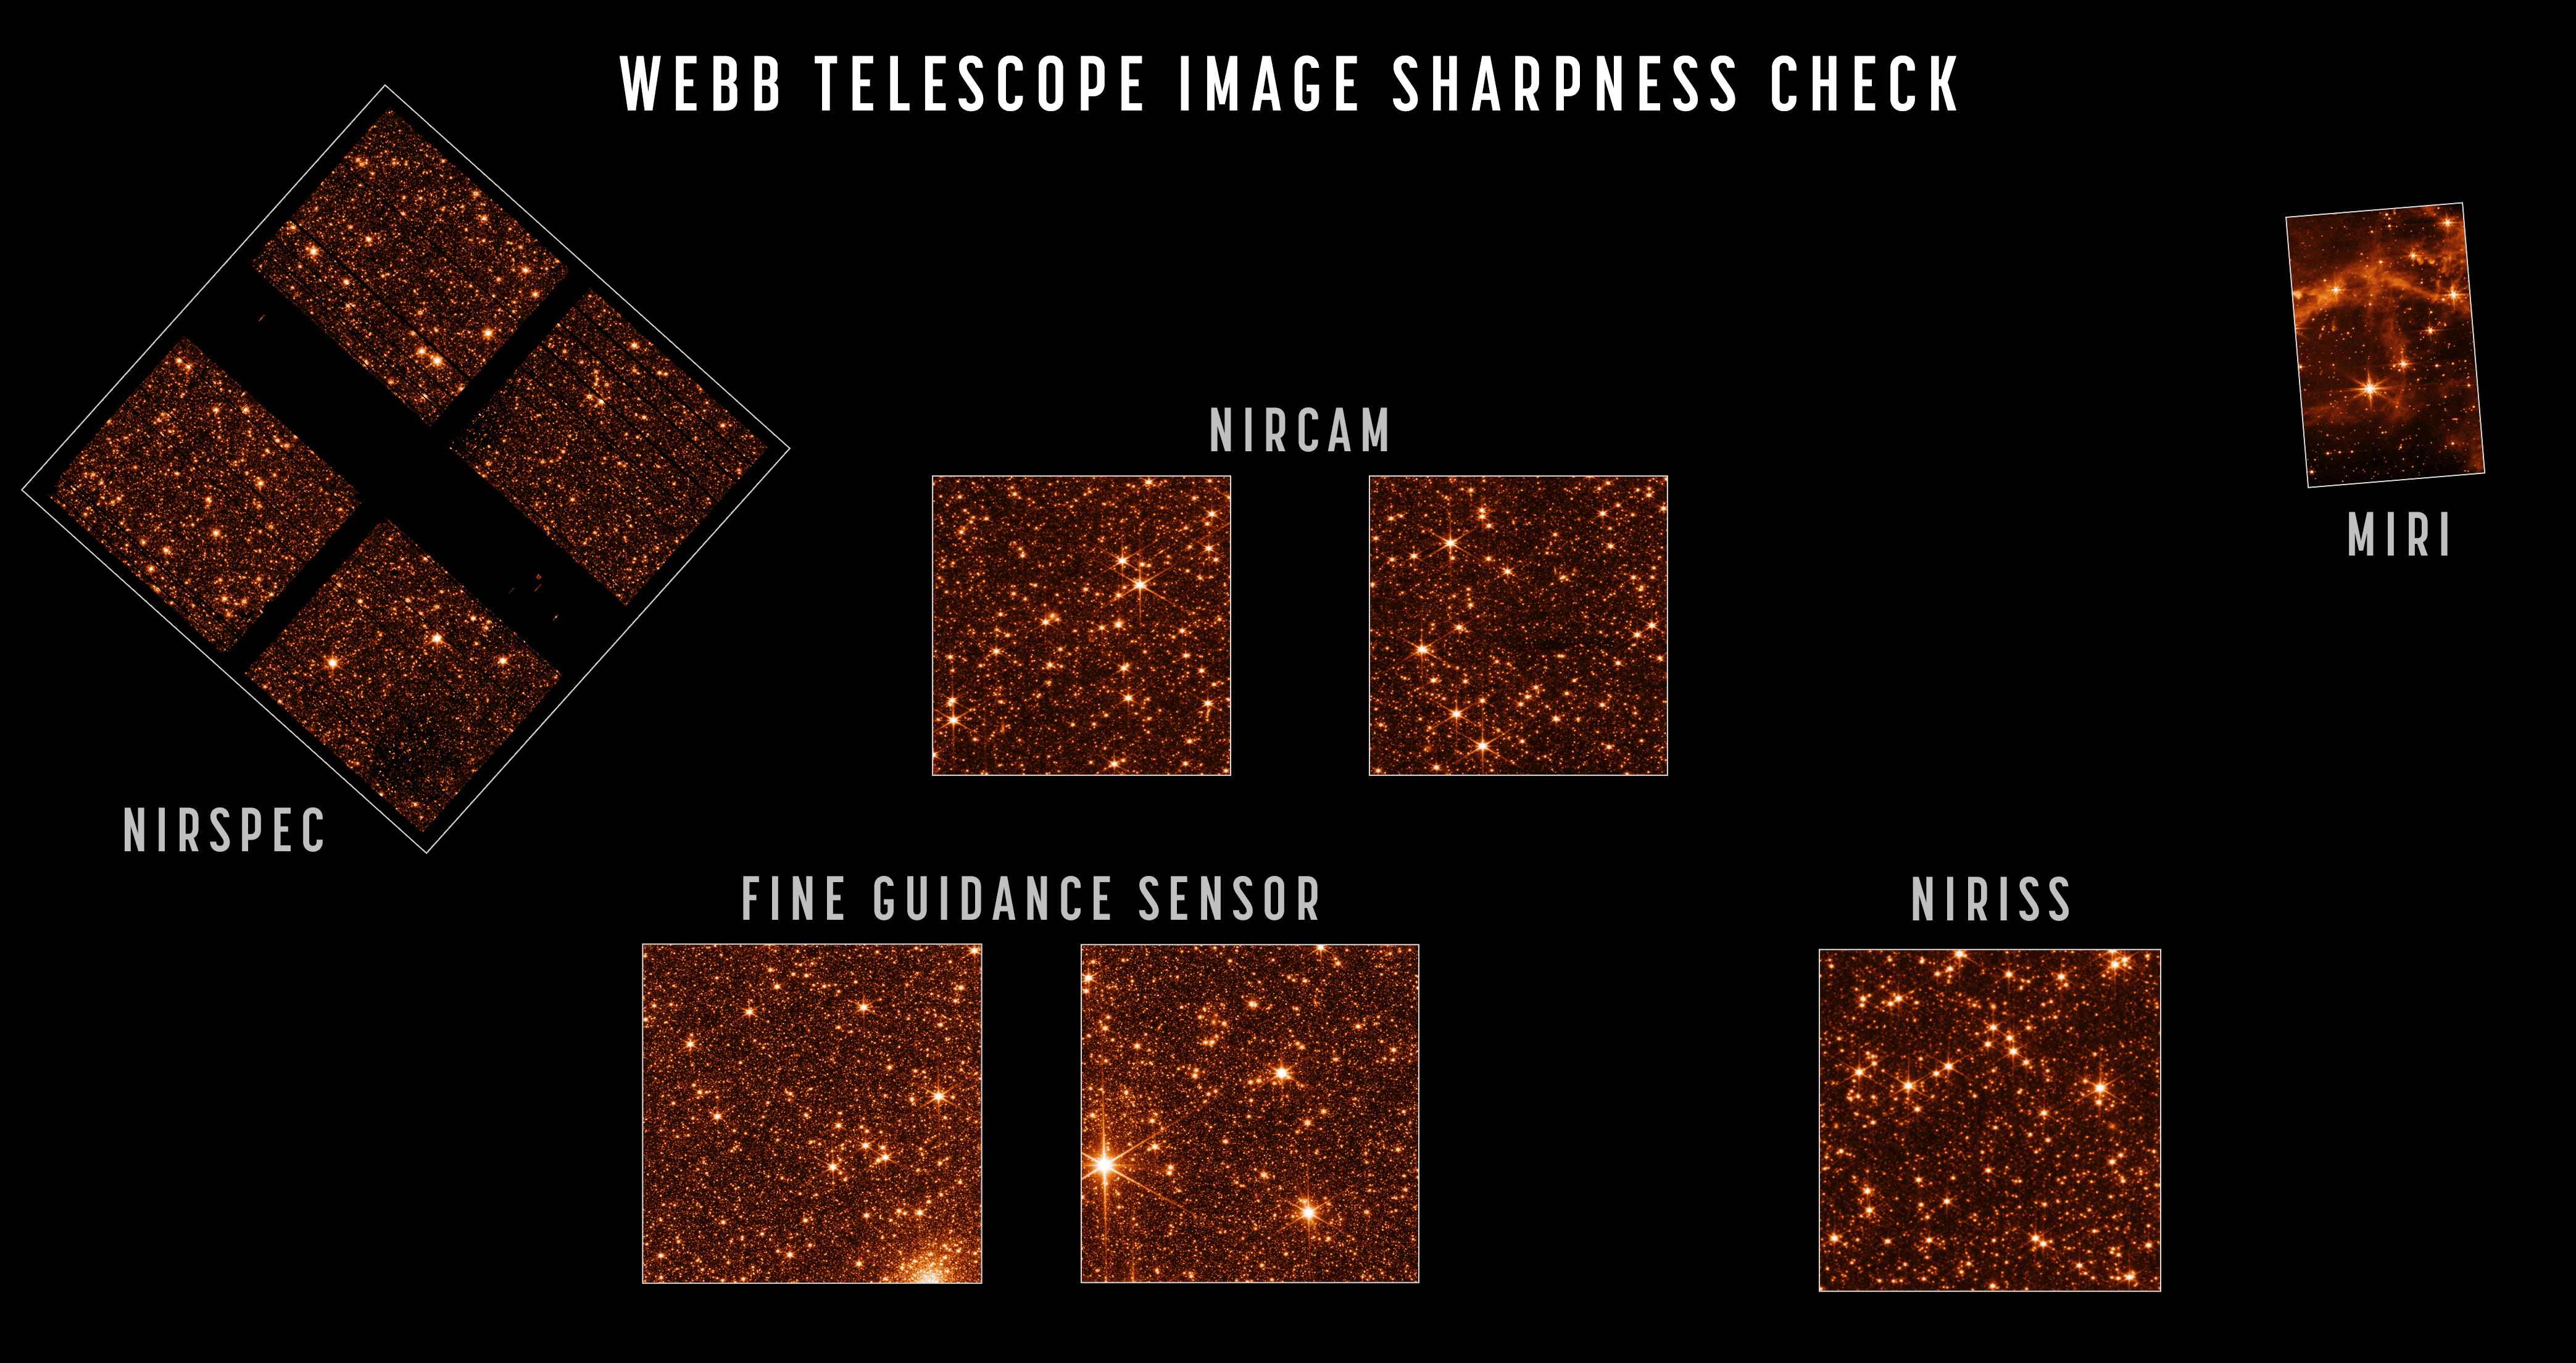 A Nagy Magellán-felhő egy részében található több százezer csillag a Webb összes érzékelőjén